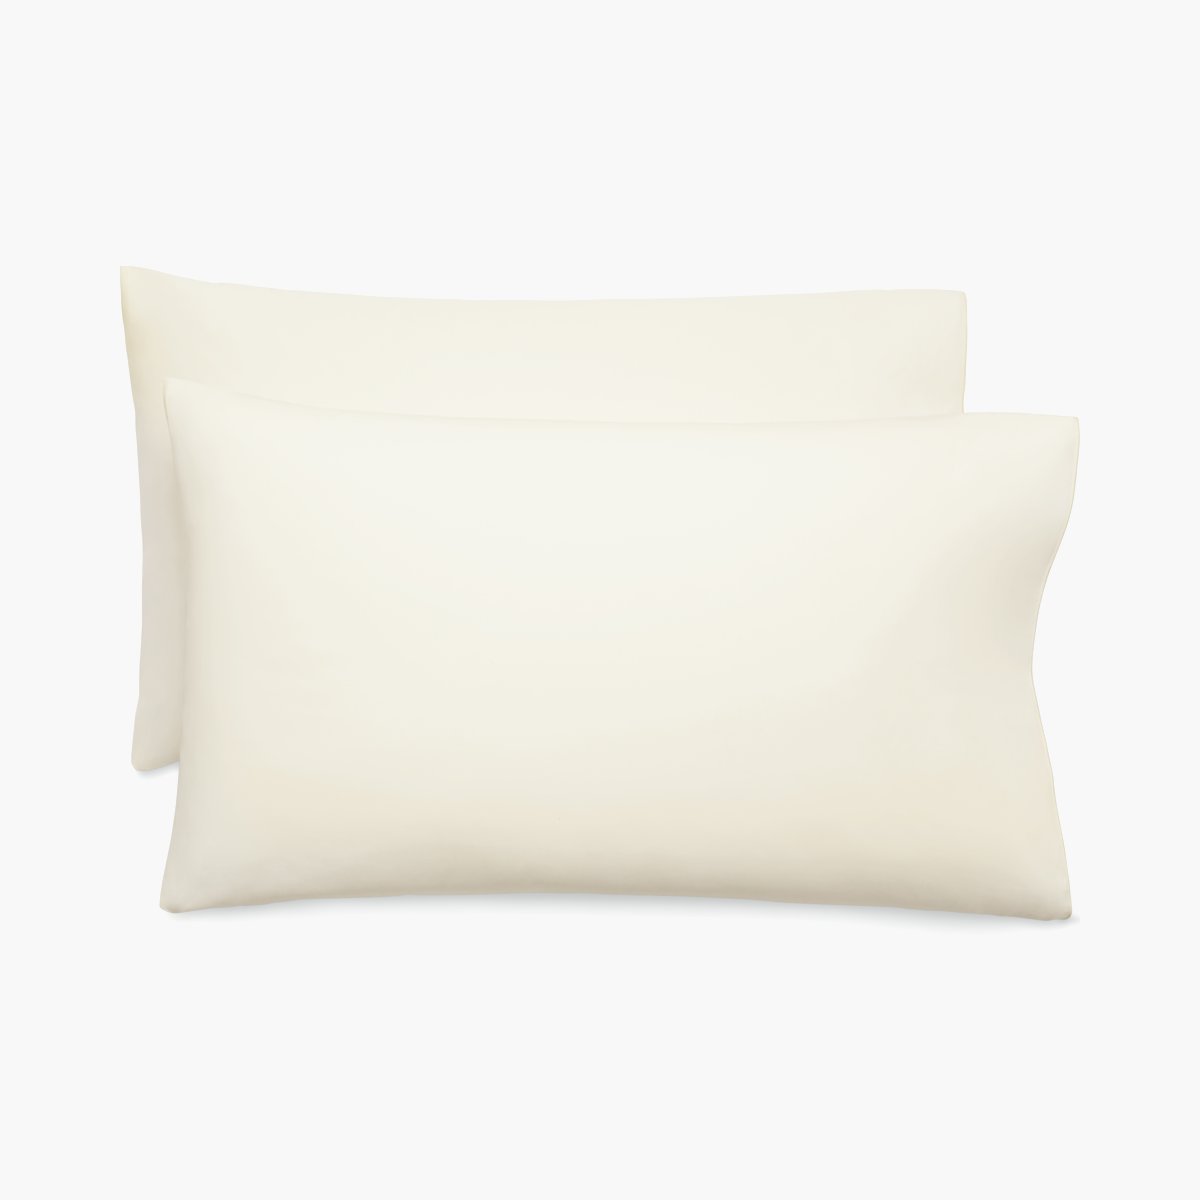 DWR Pillowcase Pair - Percale